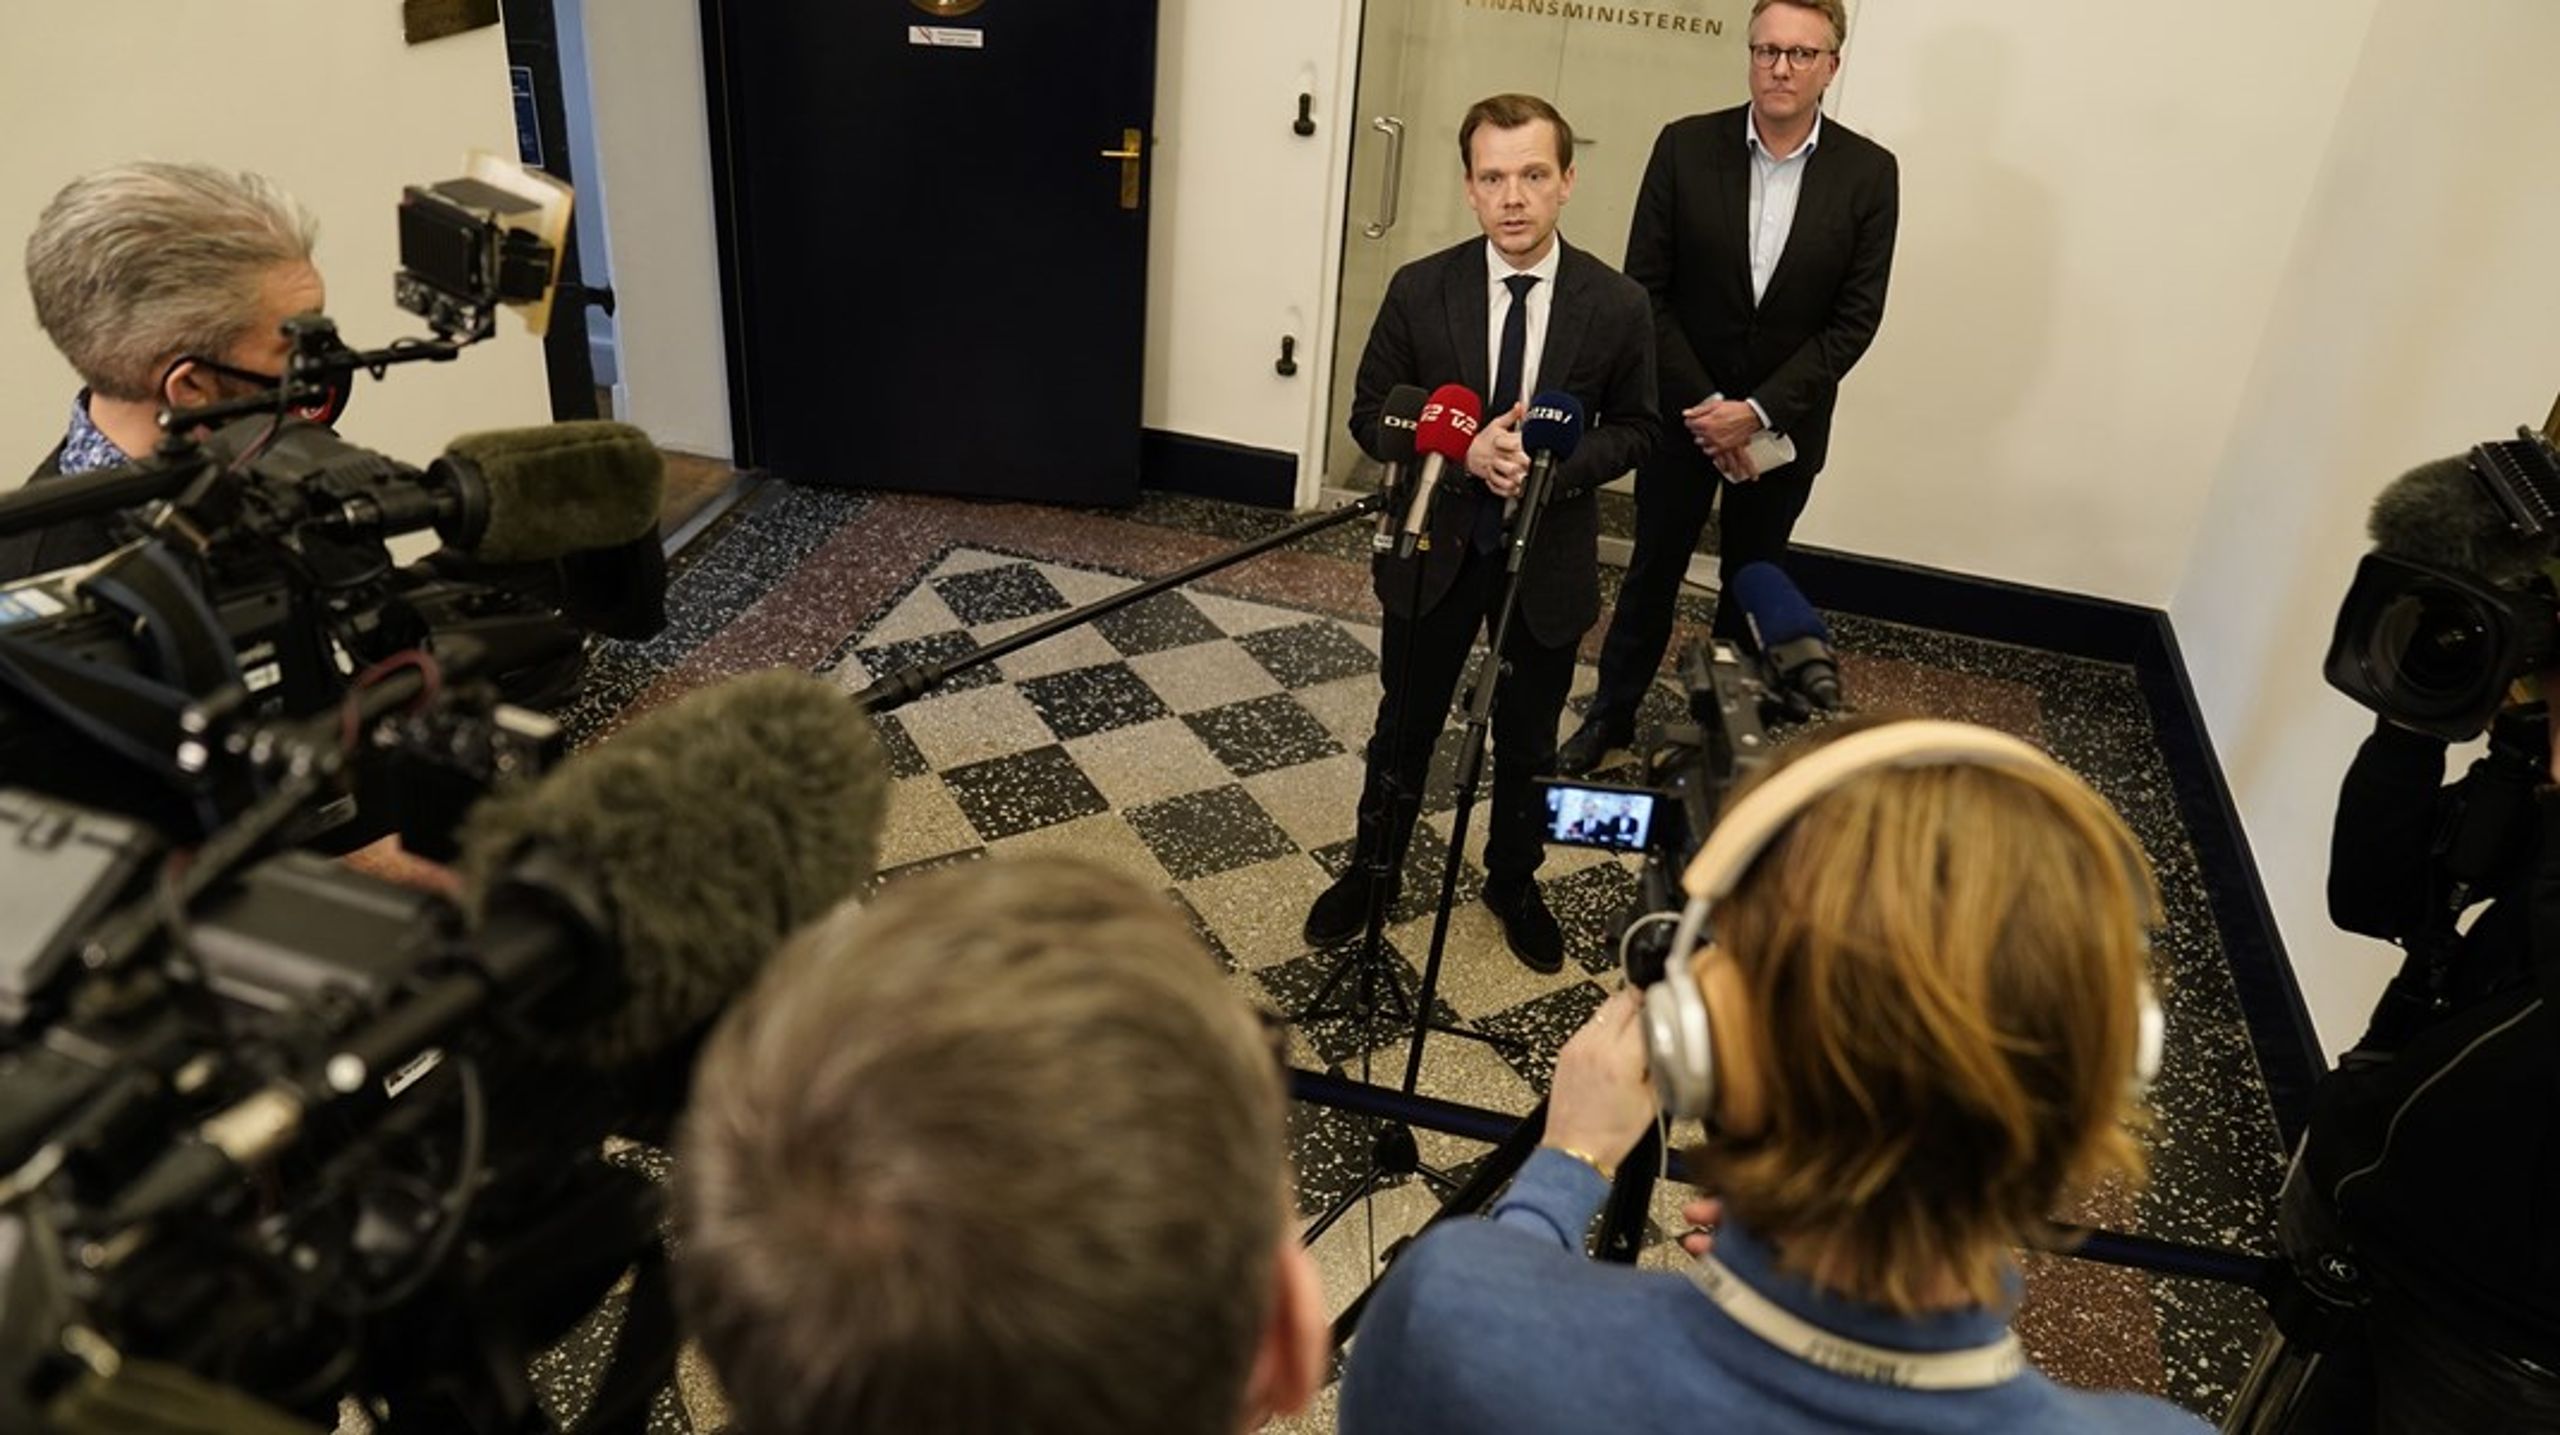 Fra 1. juni får&nbsp;beskæftigelsesminister Peter Hummelgaard (S) assistance på mediefronten med&nbsp;Mads Hersbøll i ryggen som ny pressechef.